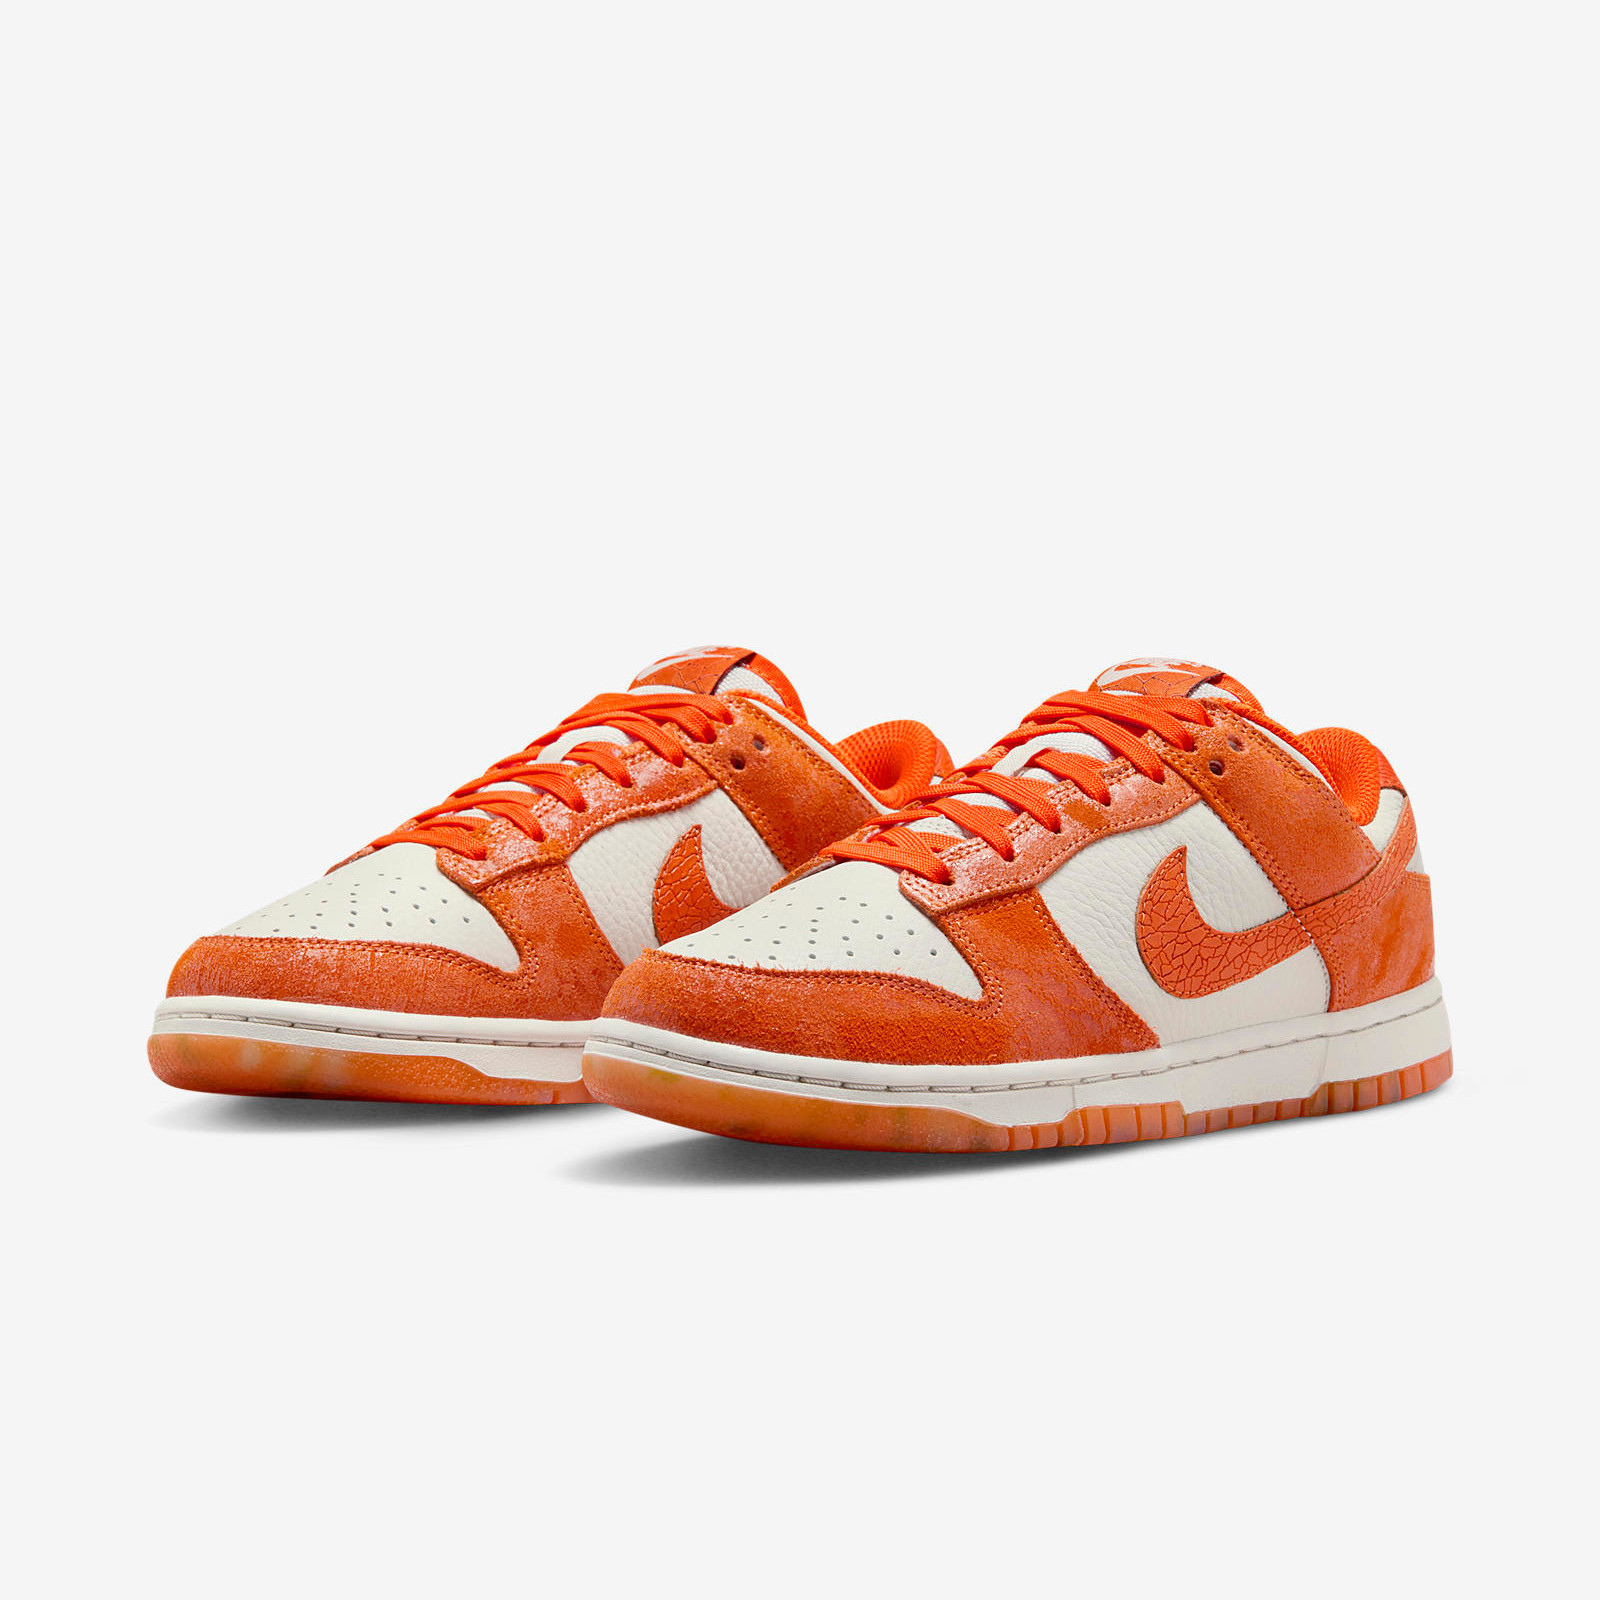 Nike Dunk Low
« Total Orange »